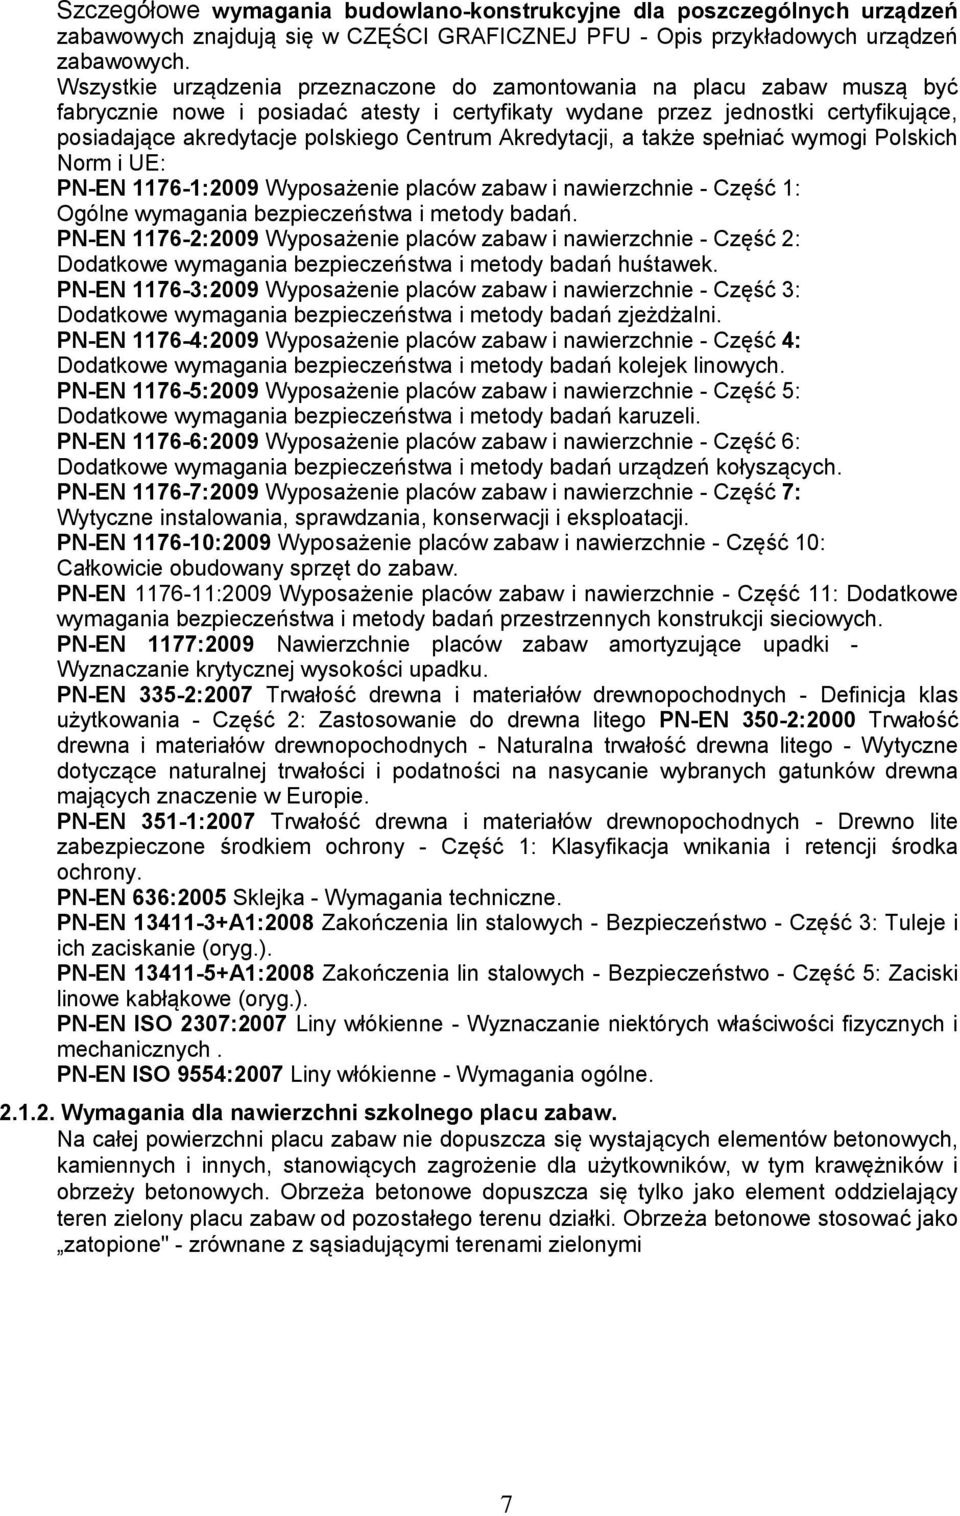 Centrum Akredytacji, a także spełniać wymogi Polskich Norm i UE: PN-EN 1176-1:2009 Wyposażenie placów zabaw i nawierzchnie - Część 1: Ogólne wymagania bezpieczeństwa i metody badań.